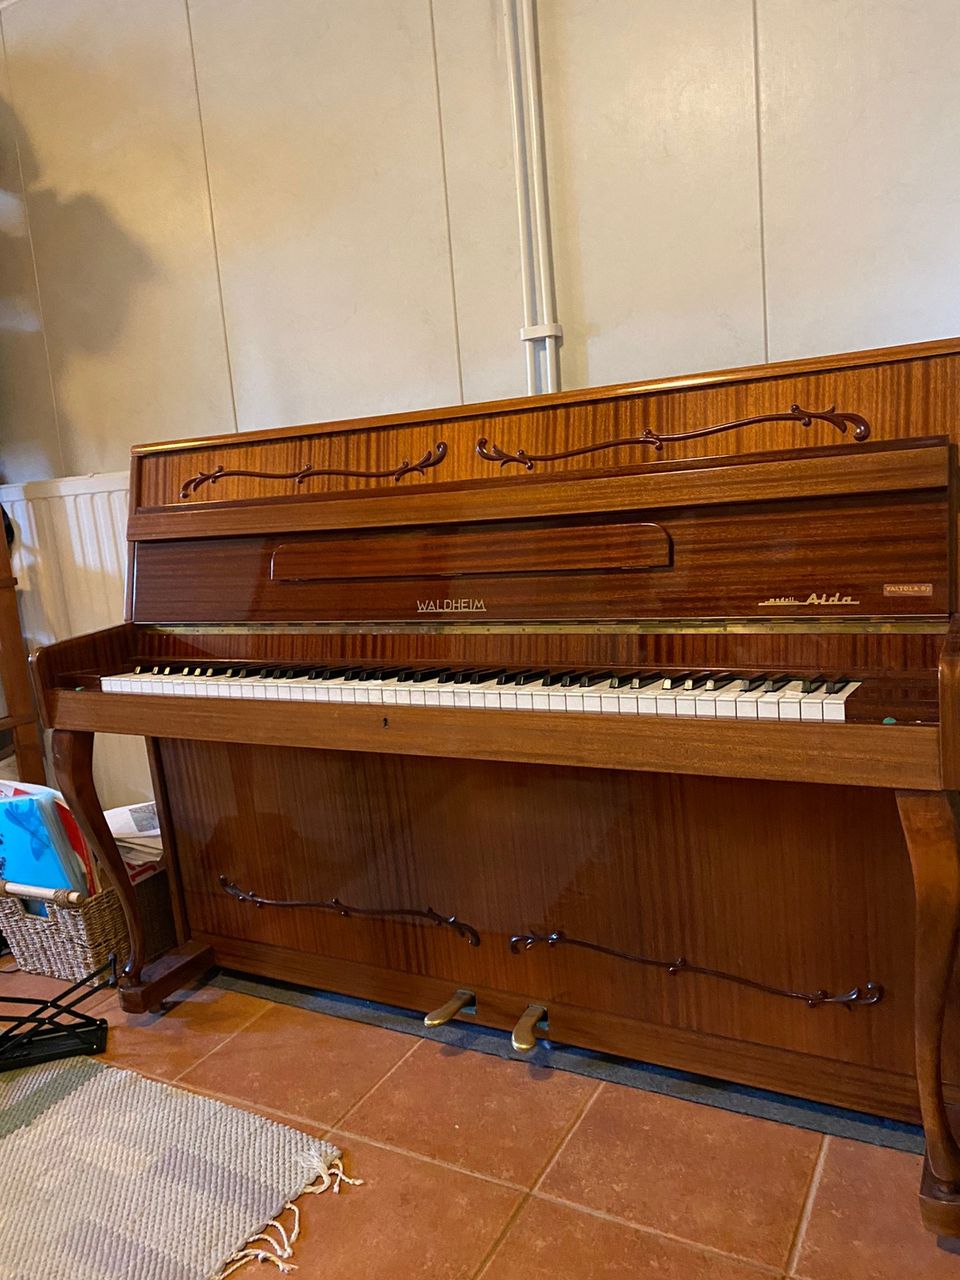 Toimiva Waldheim piano myydään